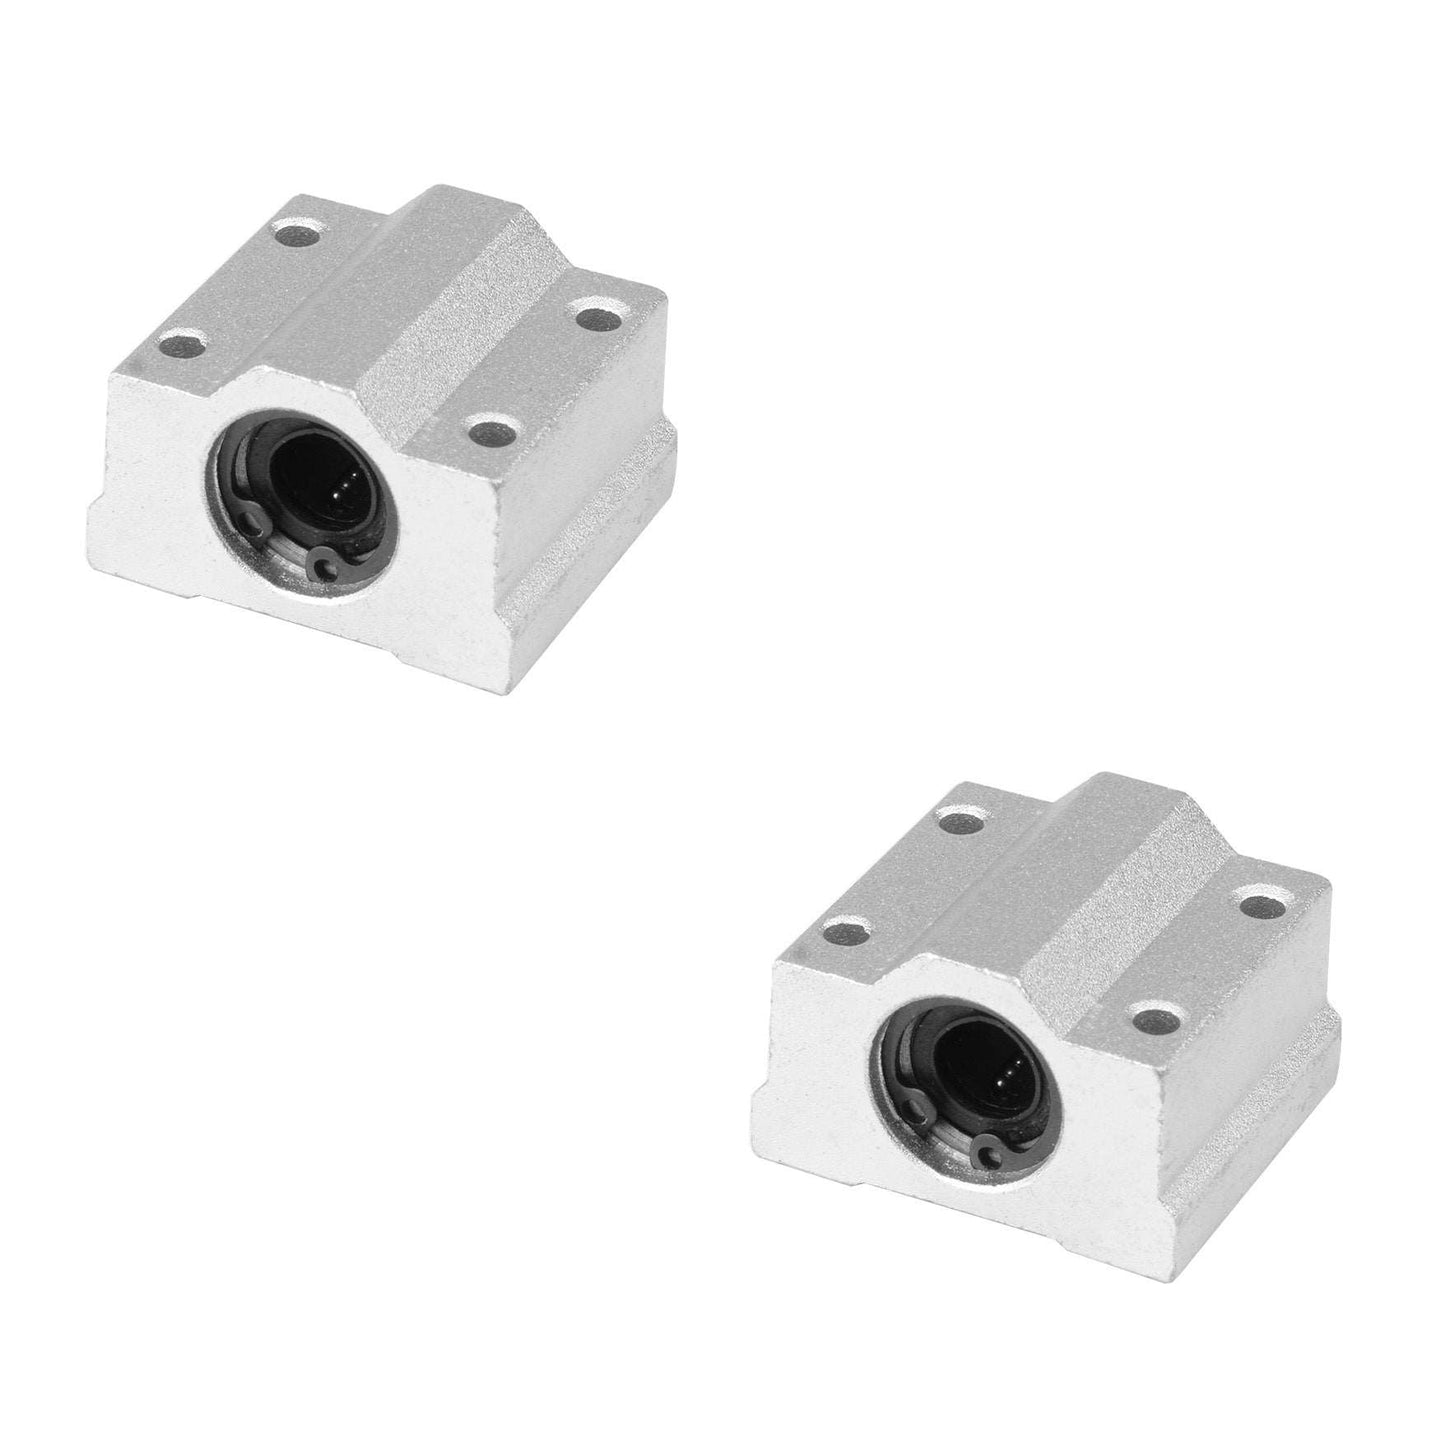 2 Stück Kugellager-Halterung/Kugellager-Set für 3D-Drucker 8mm Linear-Führungsstange